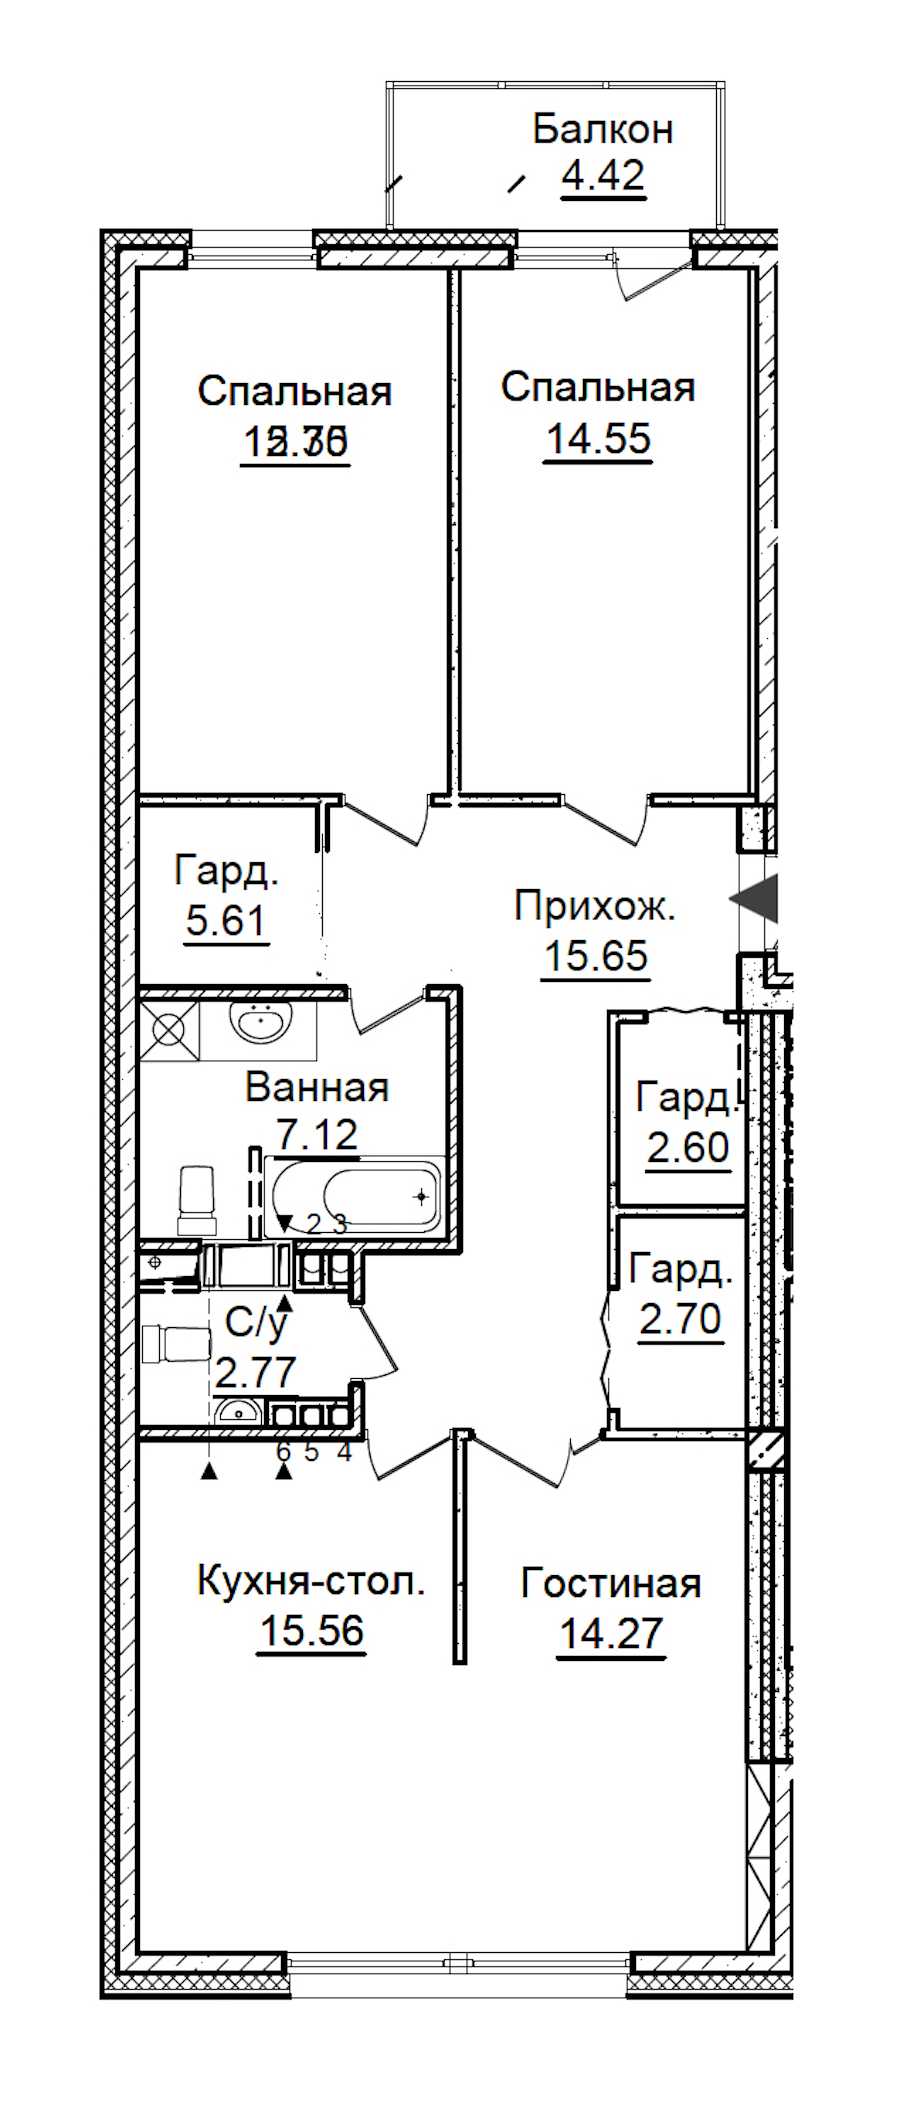 Трехкомнатная квартира в : площадь 94.53 м2 , этаж: 5 – купить в Санкт-Петербурге